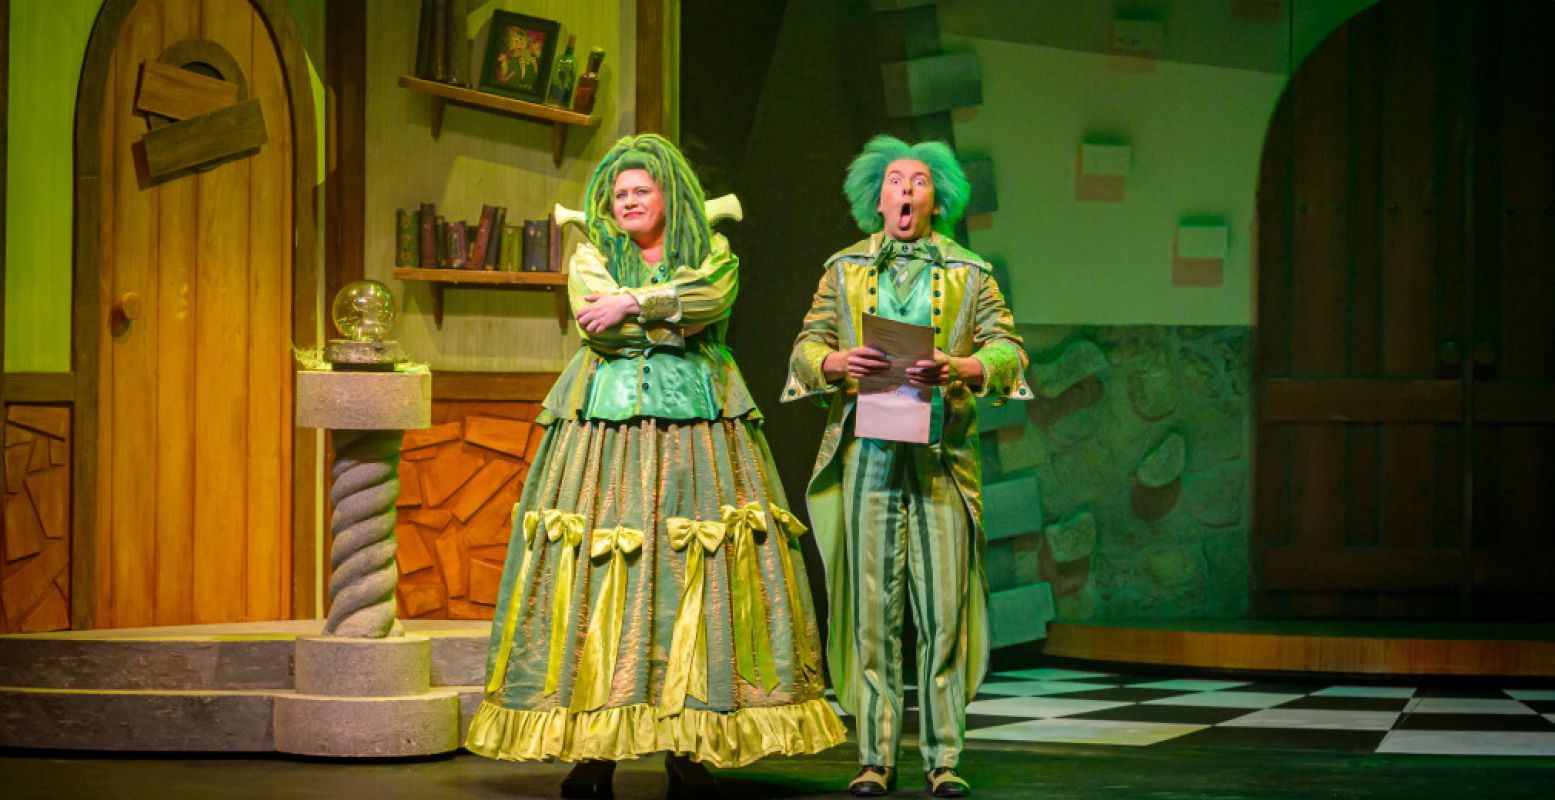 Het tovenaarsduo Titus en Fien brengt humor in Doornroosje de Musical. Foto: Wim Lanser